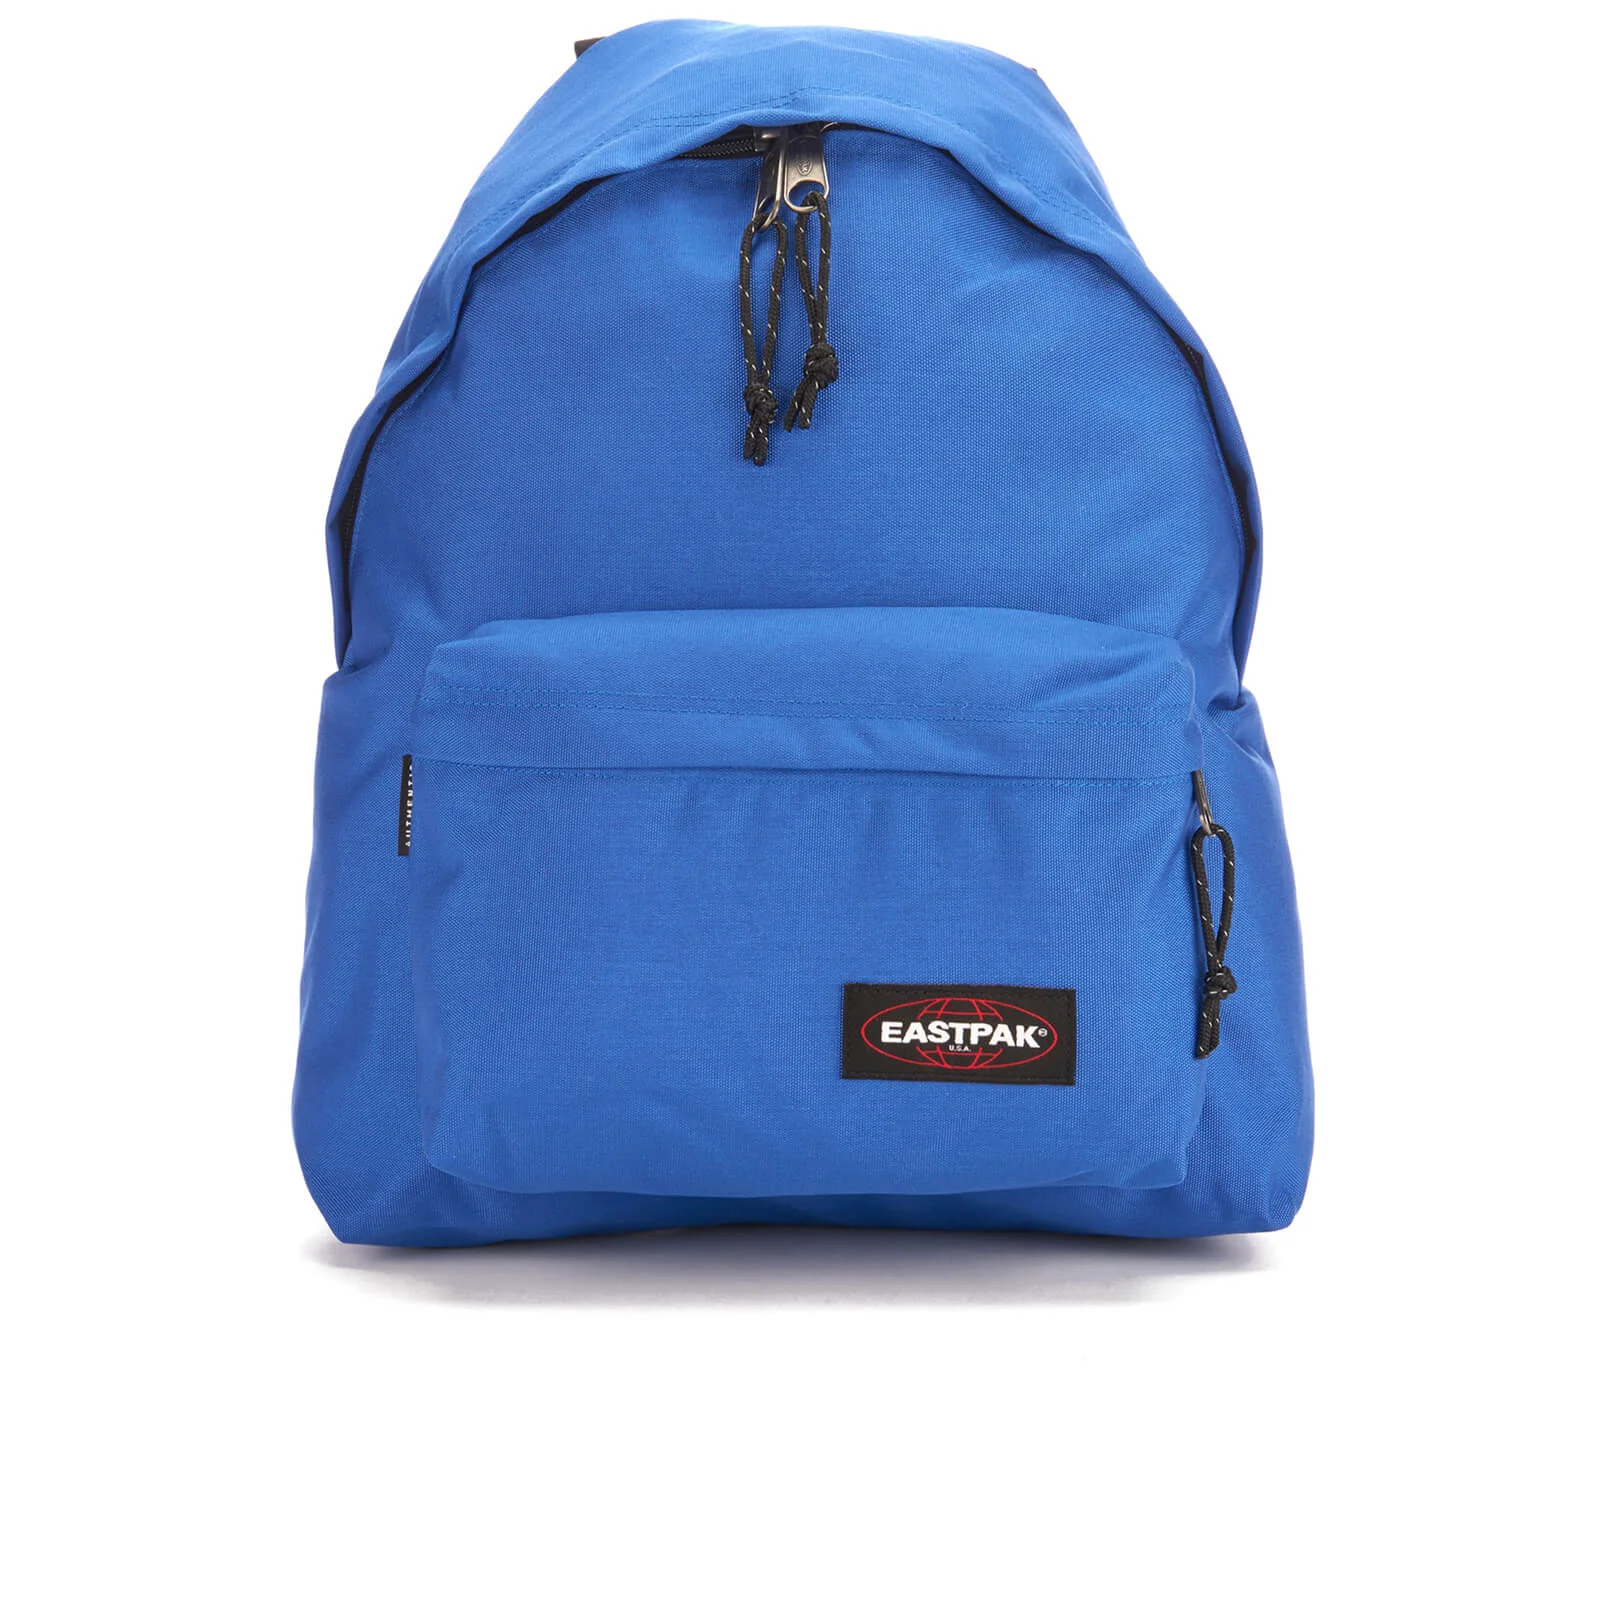 Eastpak Padded Pak'r Backpack - Full Tank Blue Image 1